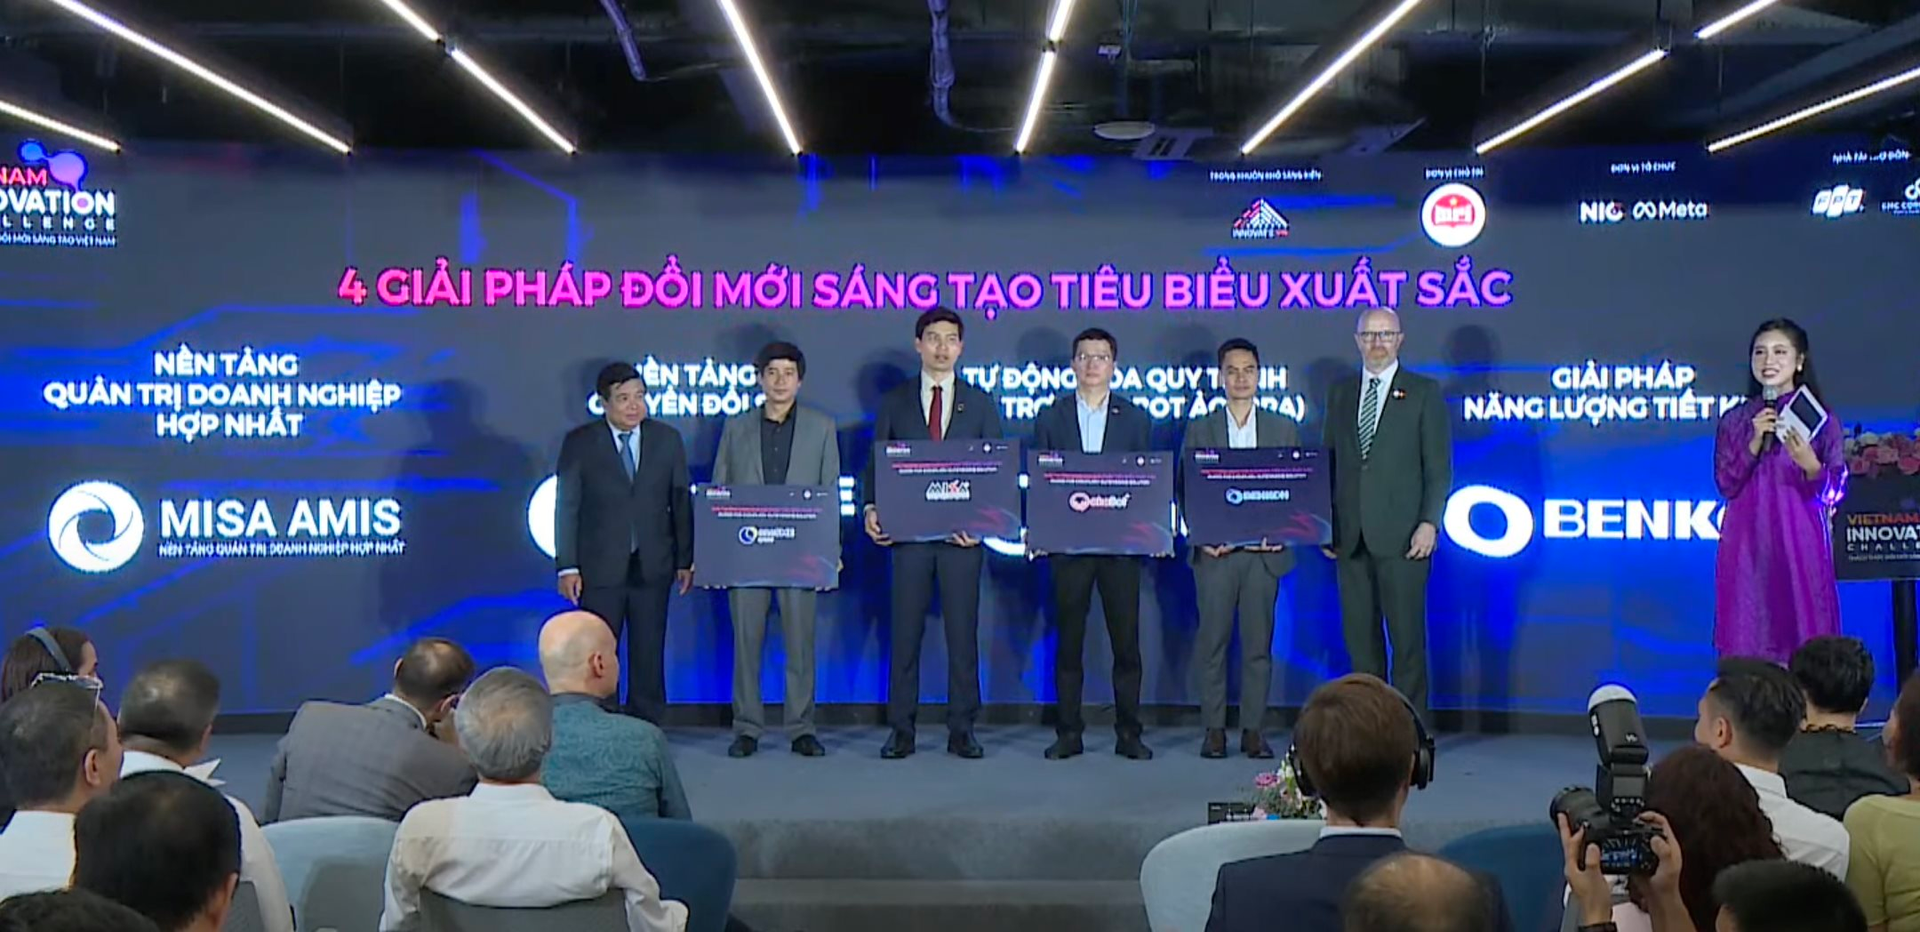 Lộ diện 4 giải pháp đổi mới sáng tạo xuất sắc nhất Việt Nam: FPT, VNPT, Misa cùng startup tối ưu vận hành điều hòa Benkon được vinh danh - Ảnh 1.